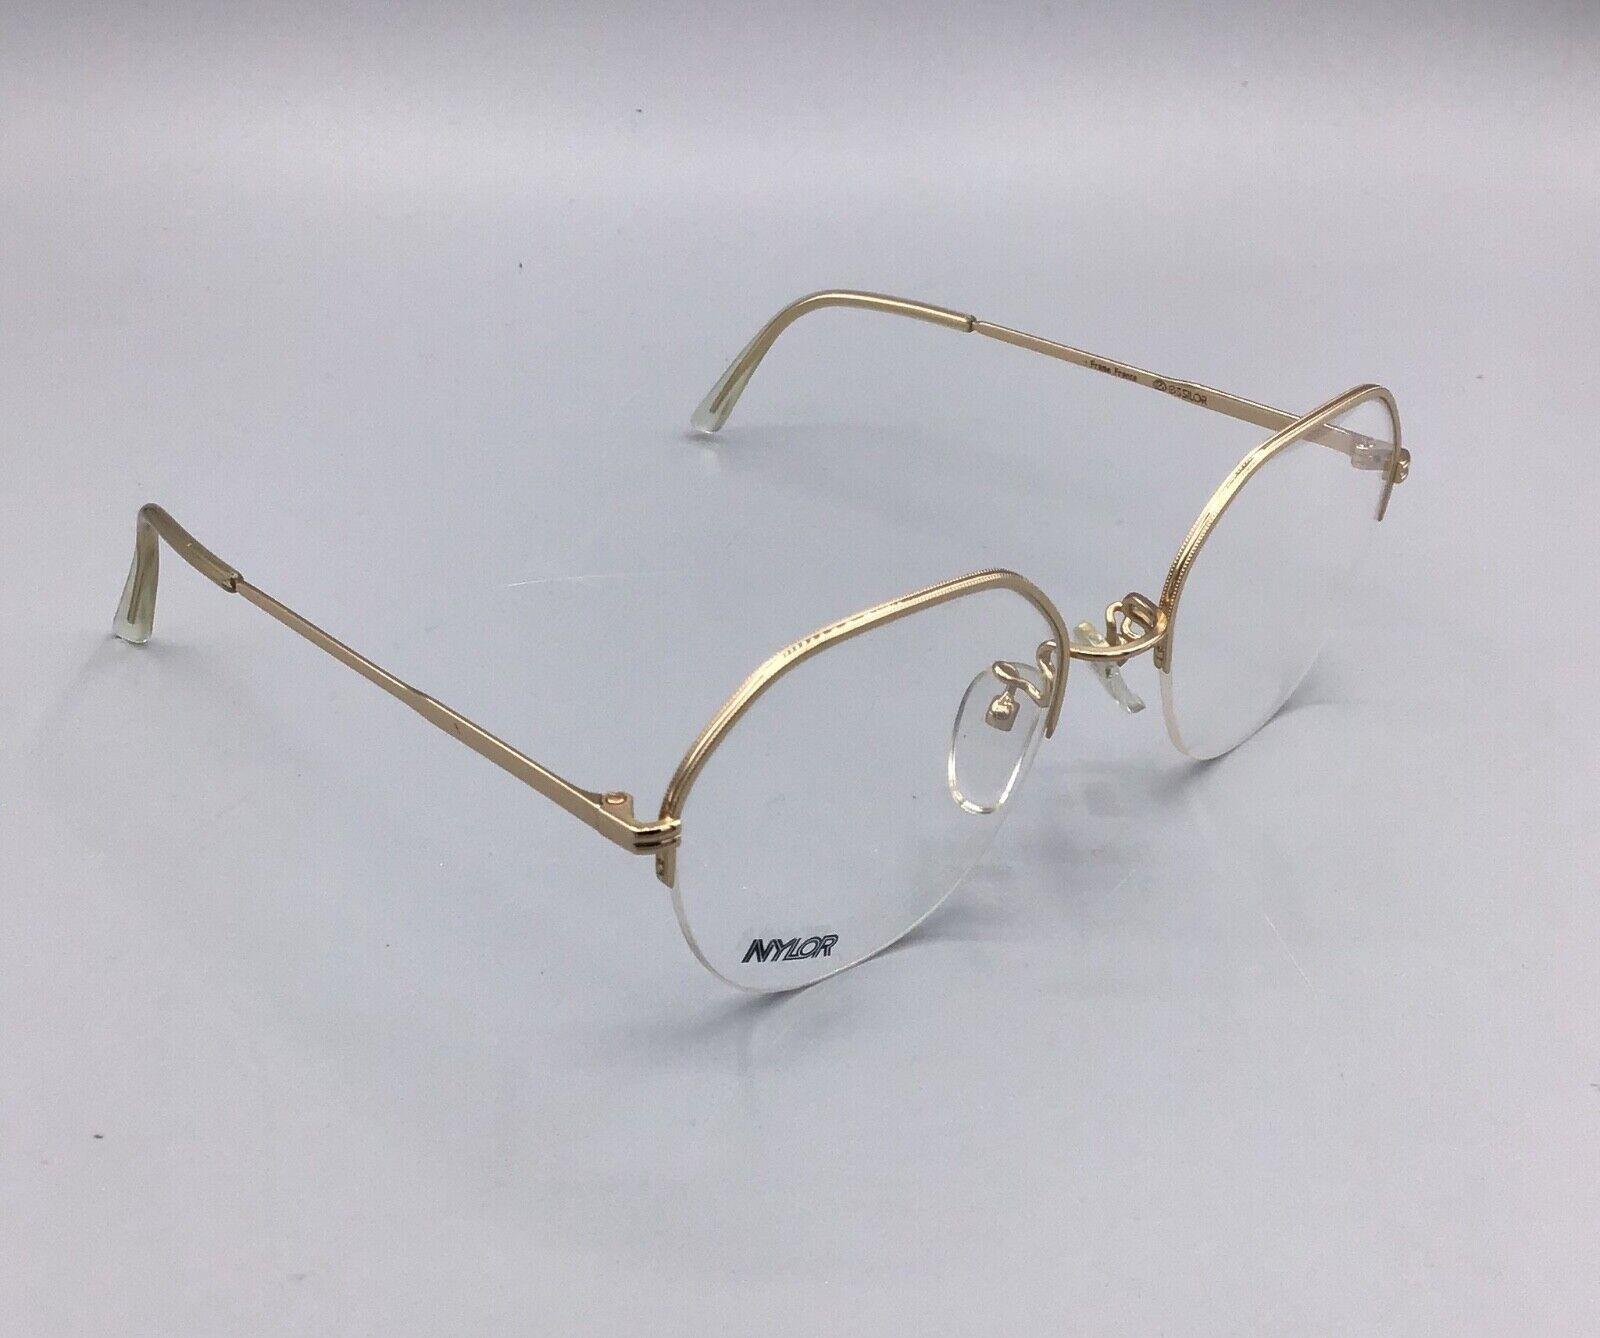 Essilor Nylor Frame France occhiale vintage Eyewear brillen lunettes gafas model 368-O WO